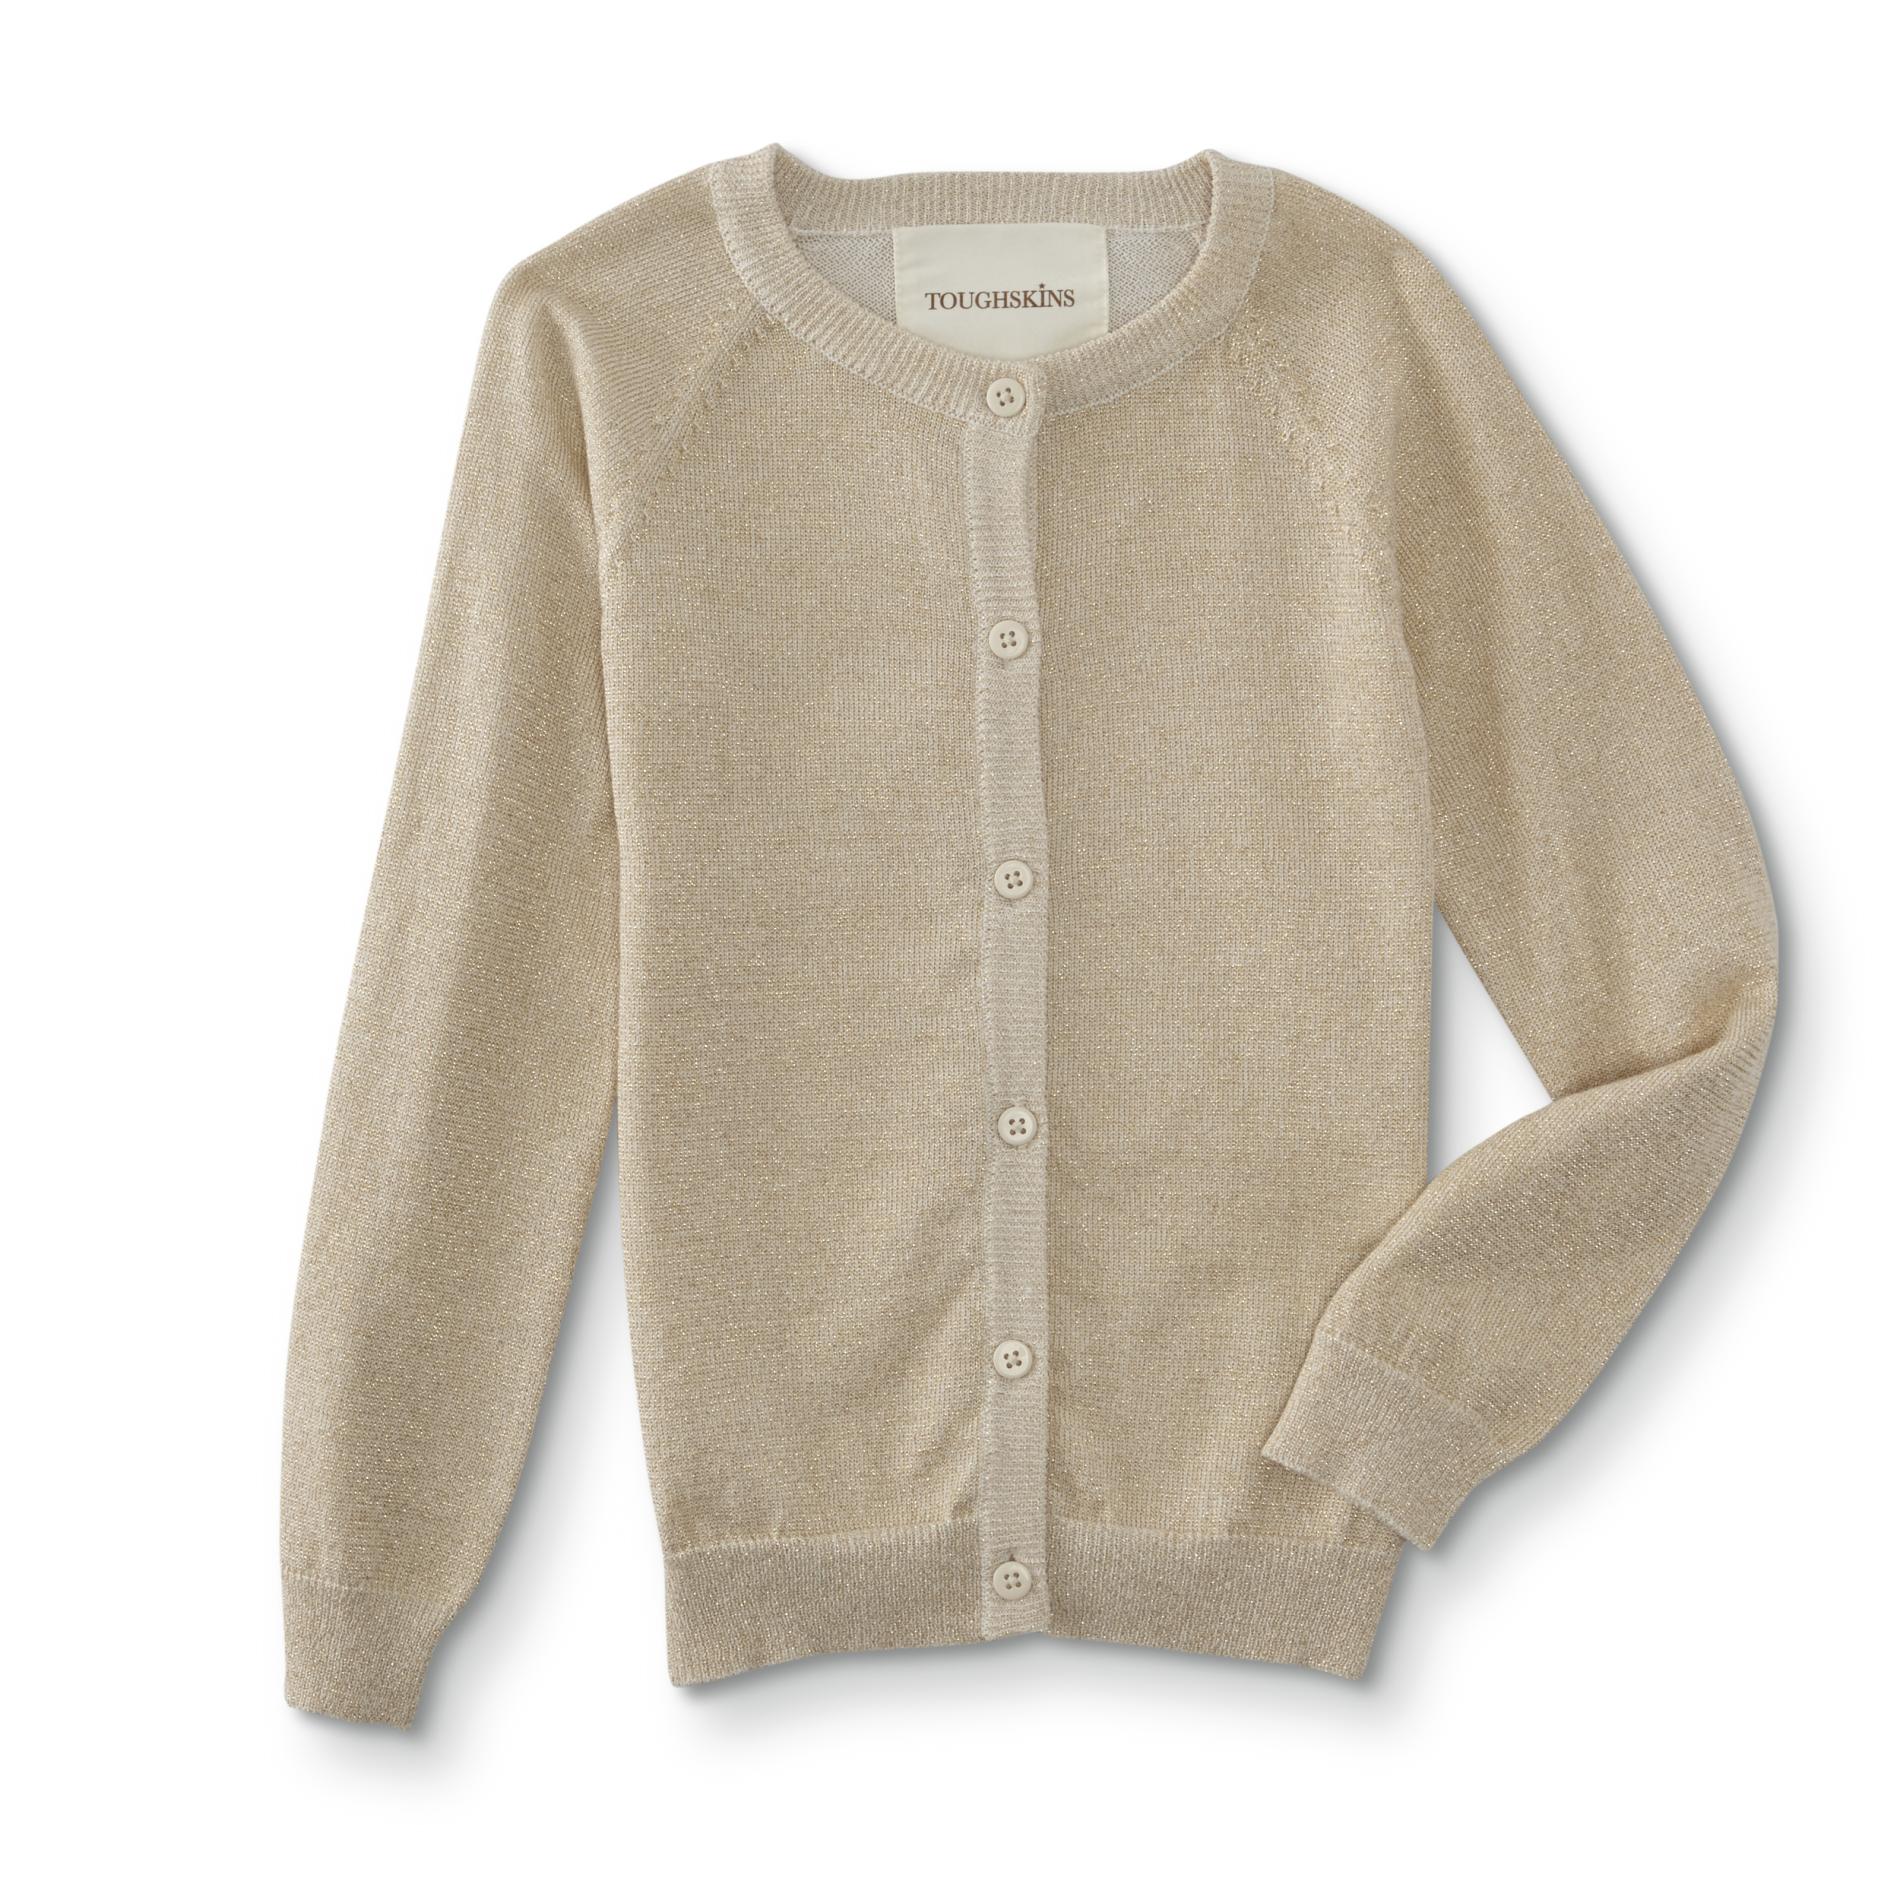 Toughskins Infant & Toddler Girls' Cardigan Sweater